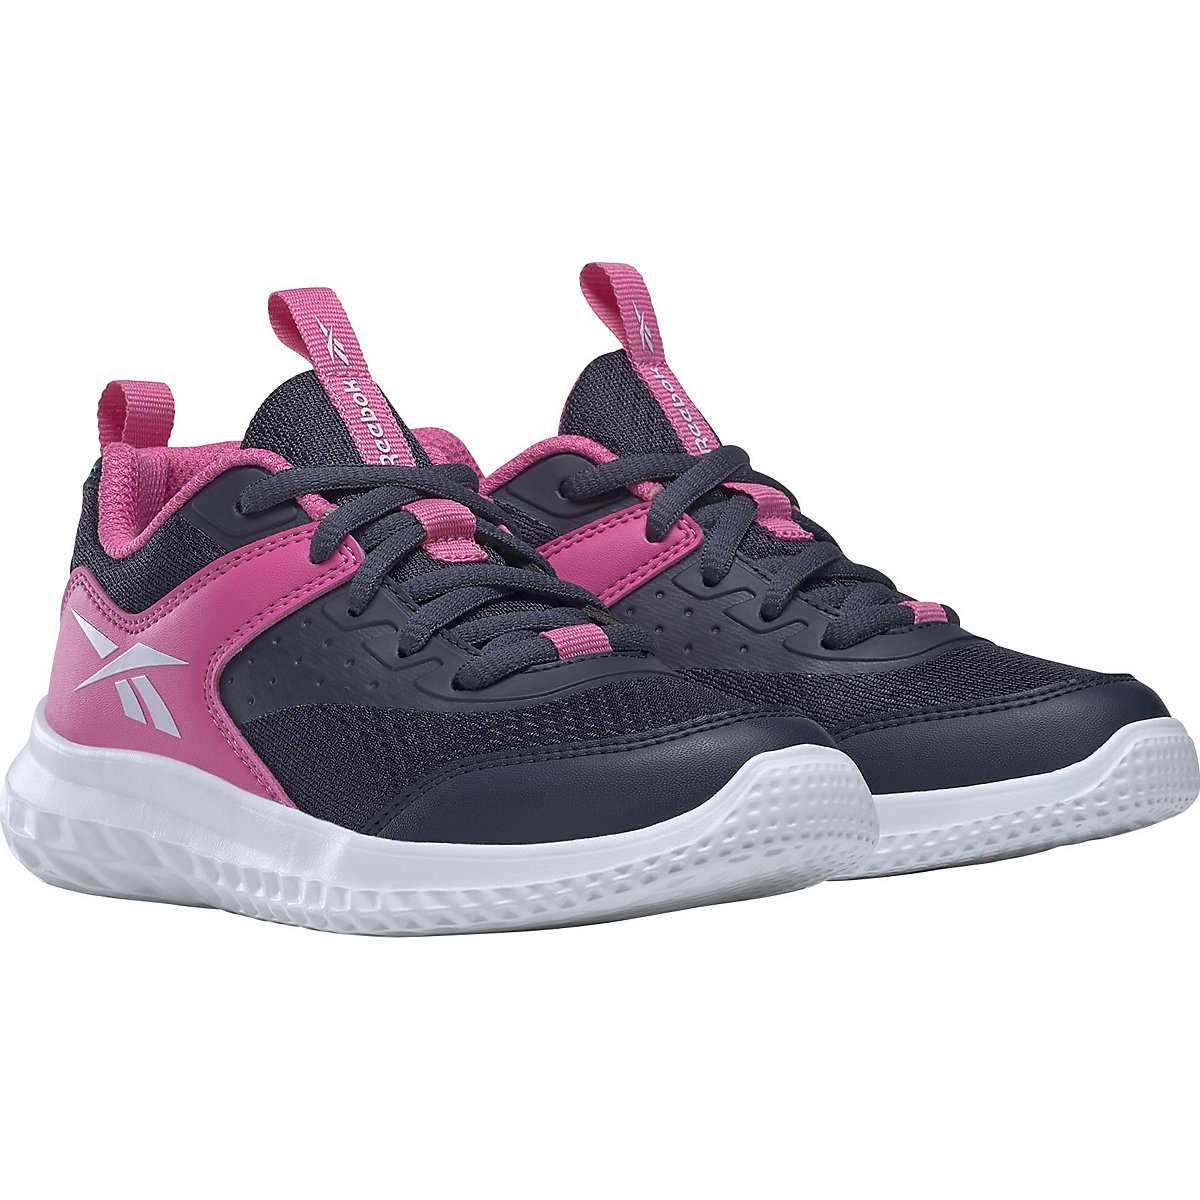 Reebok Sportschuhe RUSH RUNNER 4.0 für Mädchen pink/blau